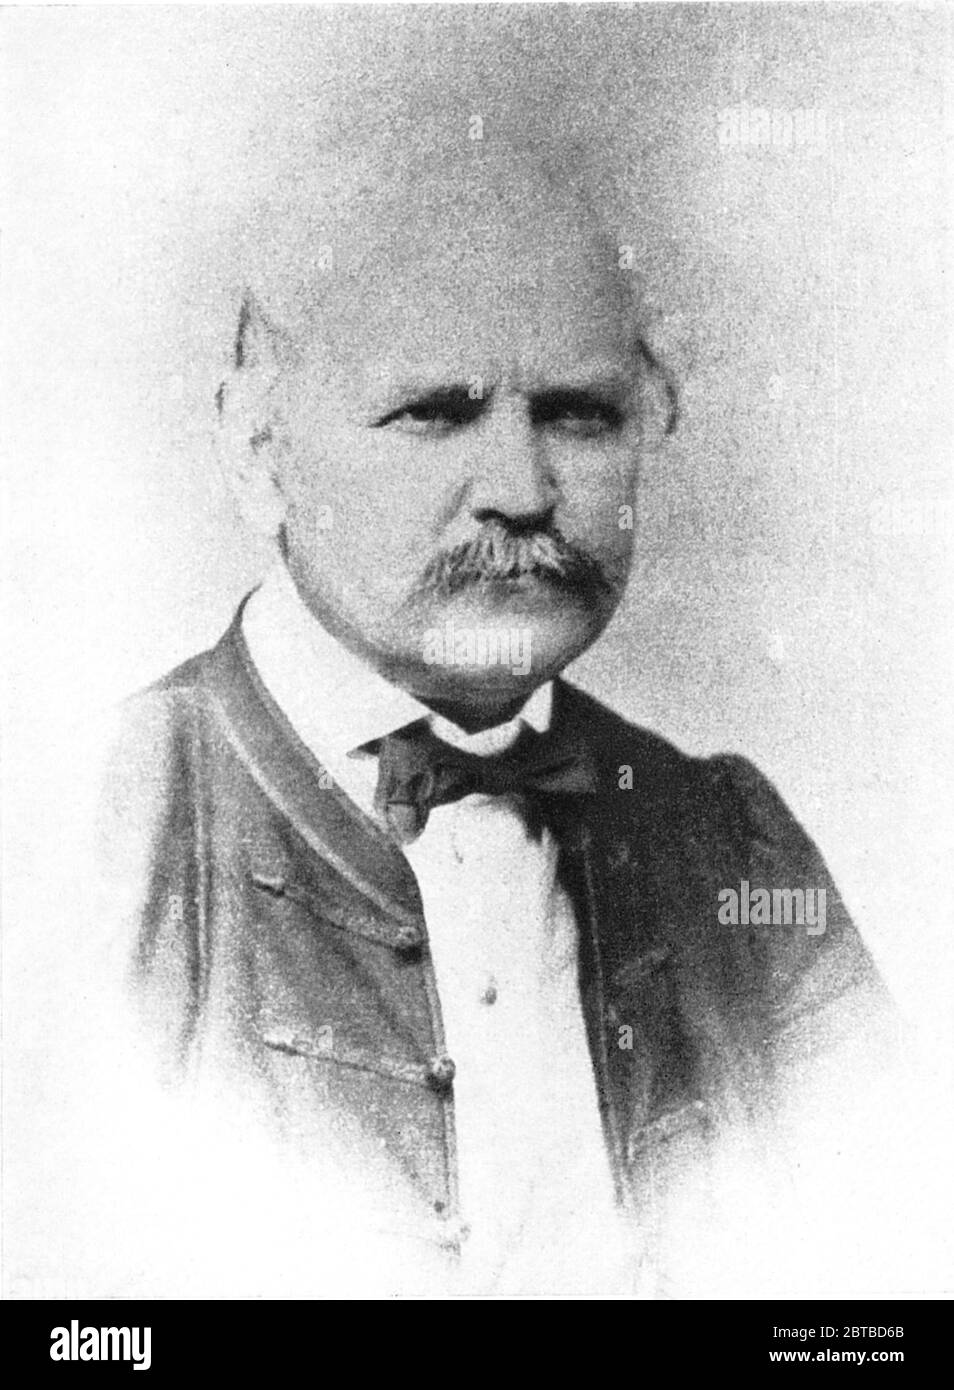 1861 CA , AUTRICHE : le médecin et scientifique hongrois-autrichien IGNAZ PHILIPP SEMMELWEIS ( 1818 - 1865 ). Maintenant connu comme un pionnier précoce des PROCÉDURES ANTISEPTIQUES . Proposer la pratique de se laver les mains avec des solutions de chaux chlorée en 1847 pour la bataille de la FIÈVRE PUERPÉRALE . - chirurgien - SCRITTORE - ÉCRIVAIN - LETTERATURA - LITTÉRATURE - foto storiche - foto storica - scienziato - scientifique - DOTTORE - MEDICO - MEDICINA - médecine - SCIENZA - SCIENCE - SCIENZIATO - IGIENE - LAVARE LE MANI - LAVAGGIO - VIRUS - VIROLOGIA - PROCEDURE VIROLOGISTALISEE ANTISETTICHE - SETTICEMIA --- Archivi Banque D'Images